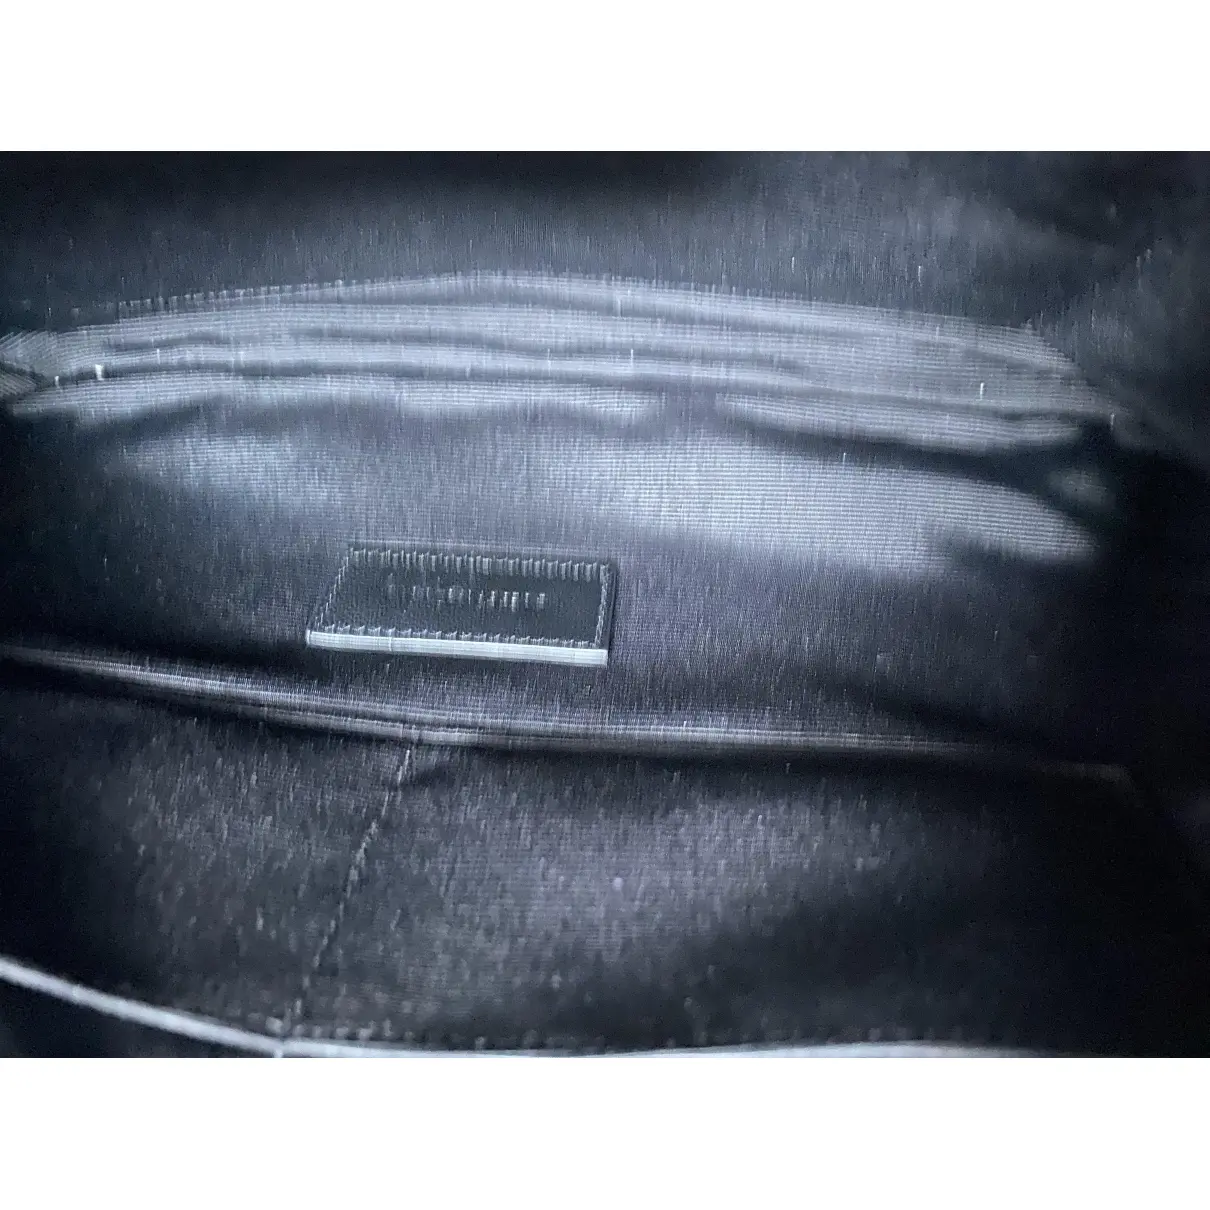 New Jolie leather clutch bag Saint Laurent